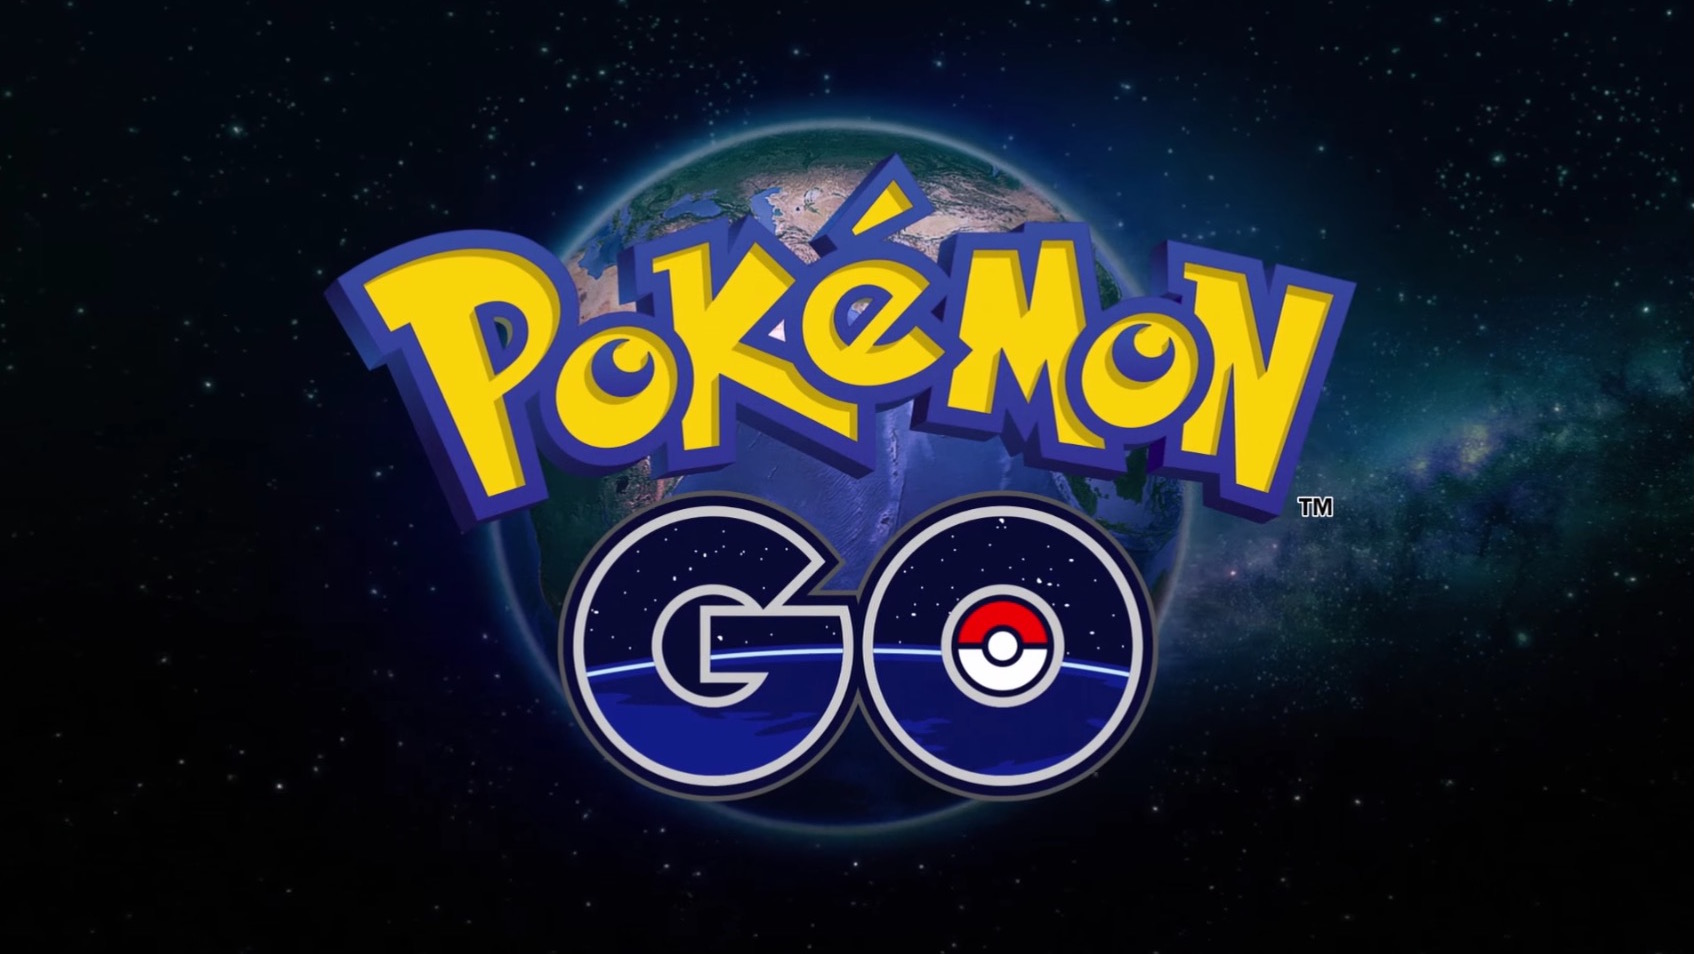 ポケモンの拡張現実ゲーム「Pokémon GO」、フィールドテスターを募集